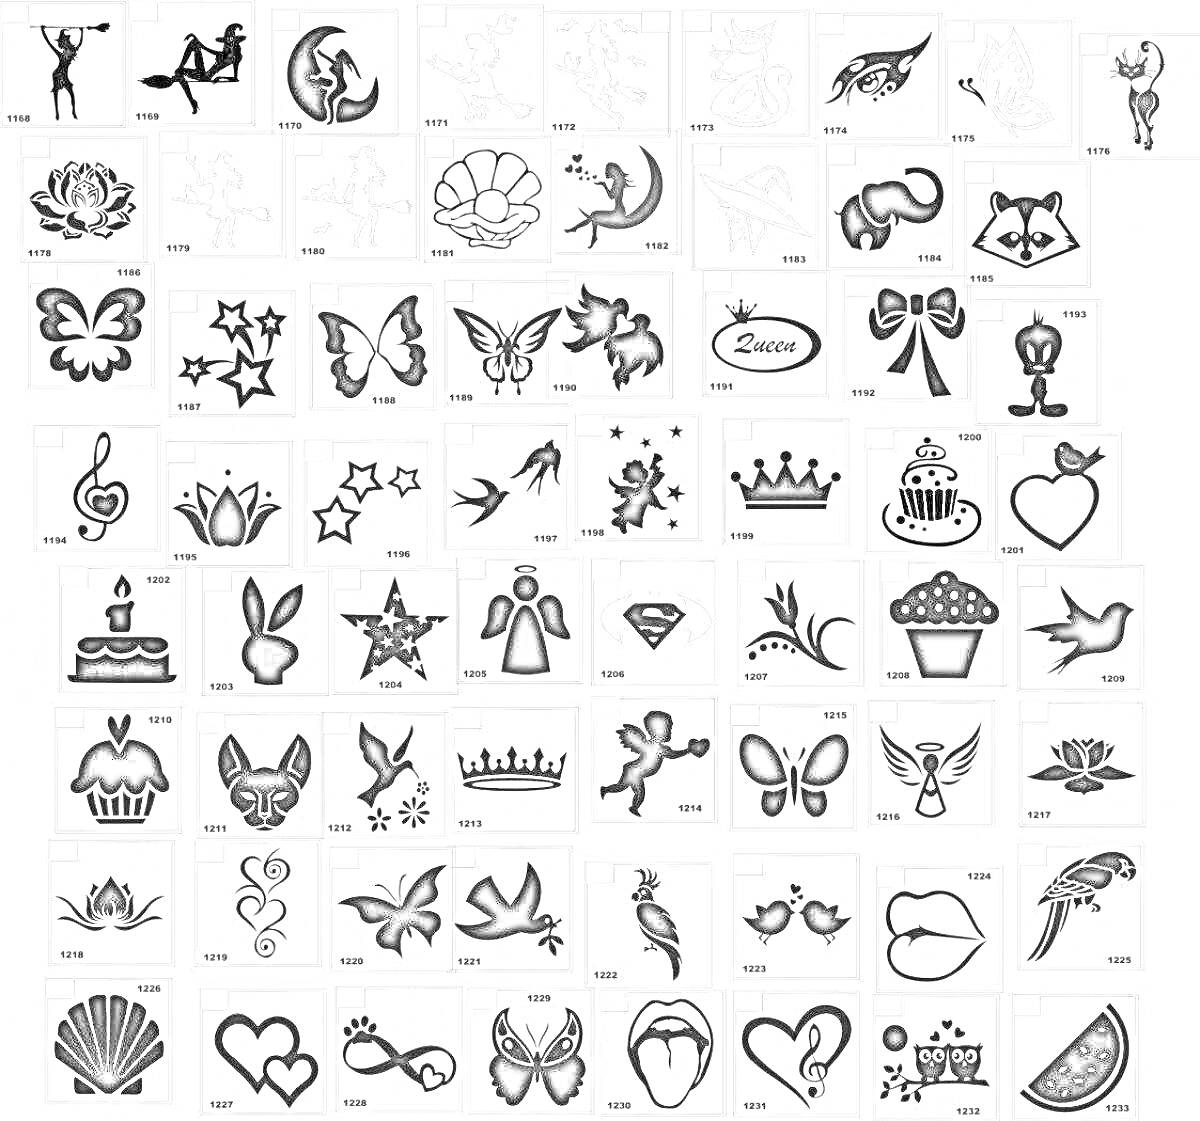 Раскраска мини тату с изображением птиц, бабочек, цветов, животных, звезд, корон, сердец, ангелов, фей, пирожных и декоративных элементов